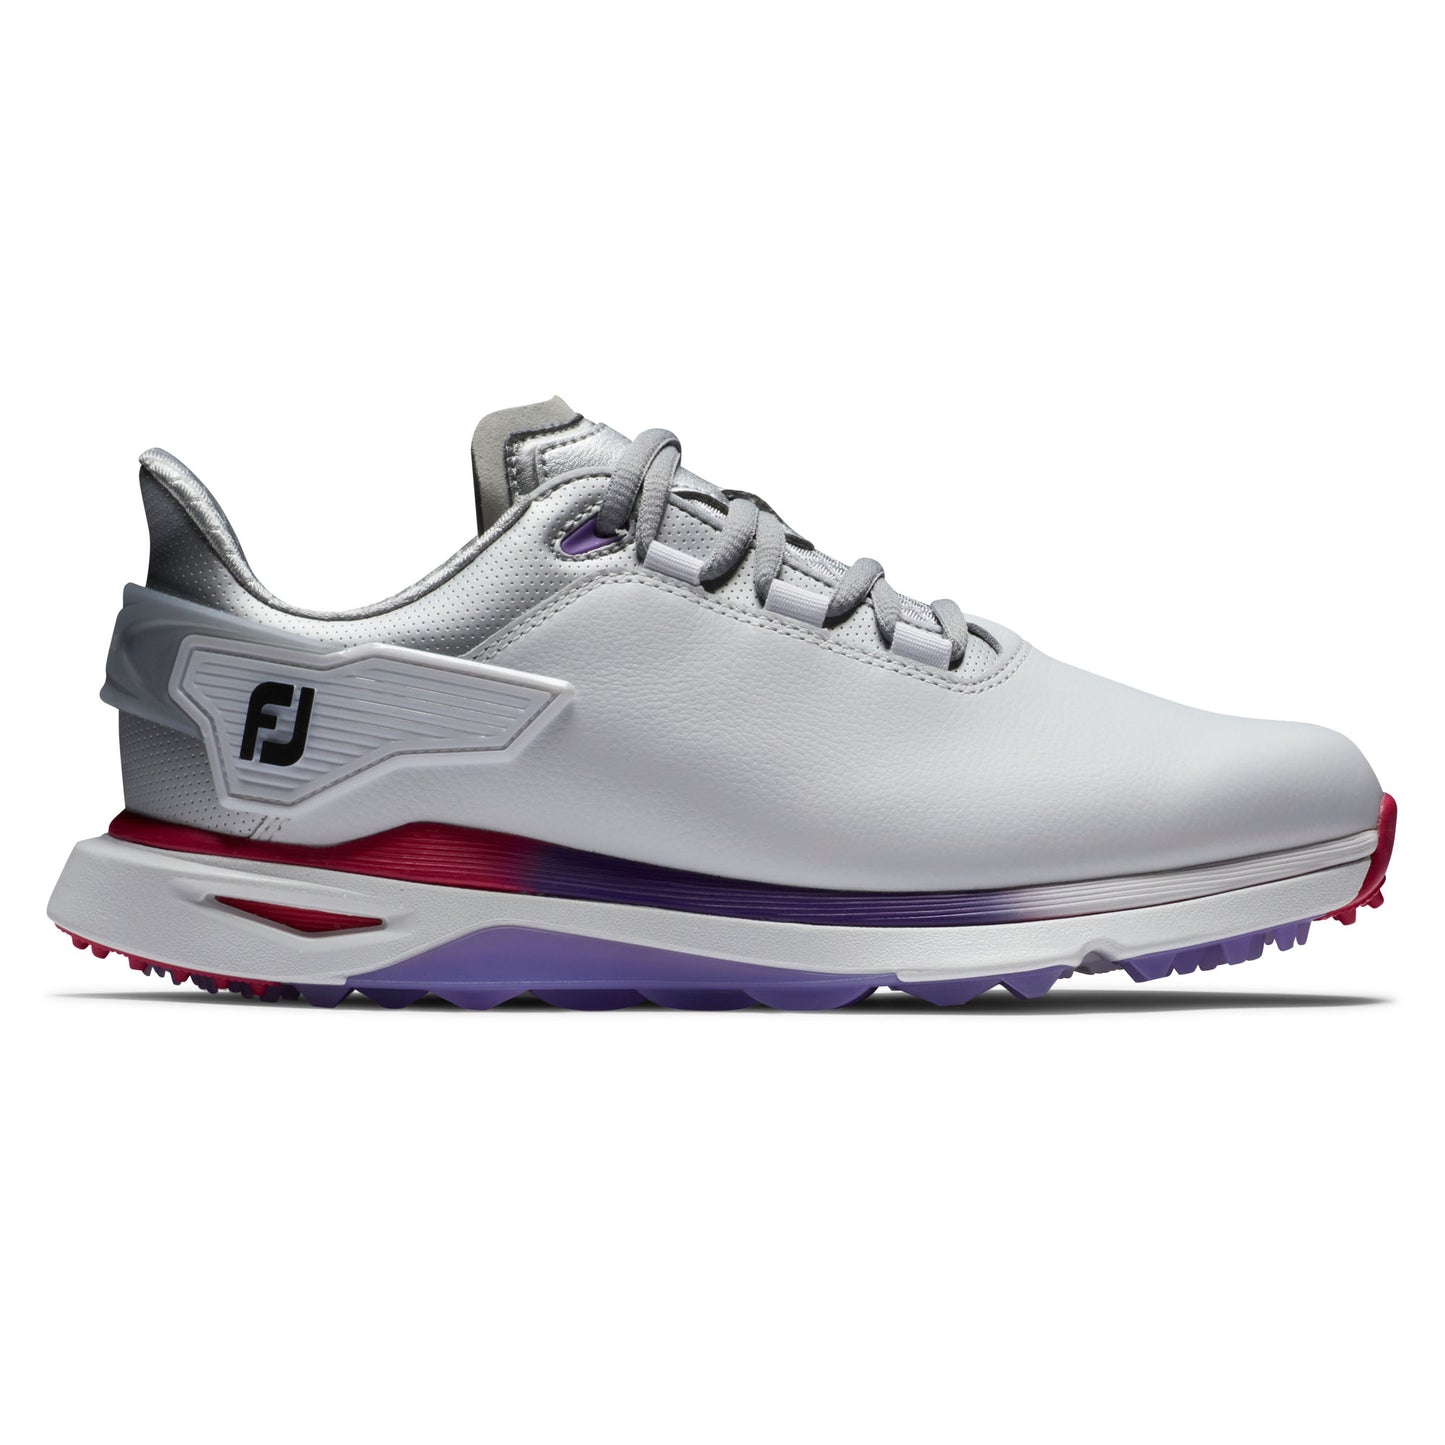 FootJoy Women's Spikeless Waterproof Pro/SLX Golf Shoes in White, Silver, Multi